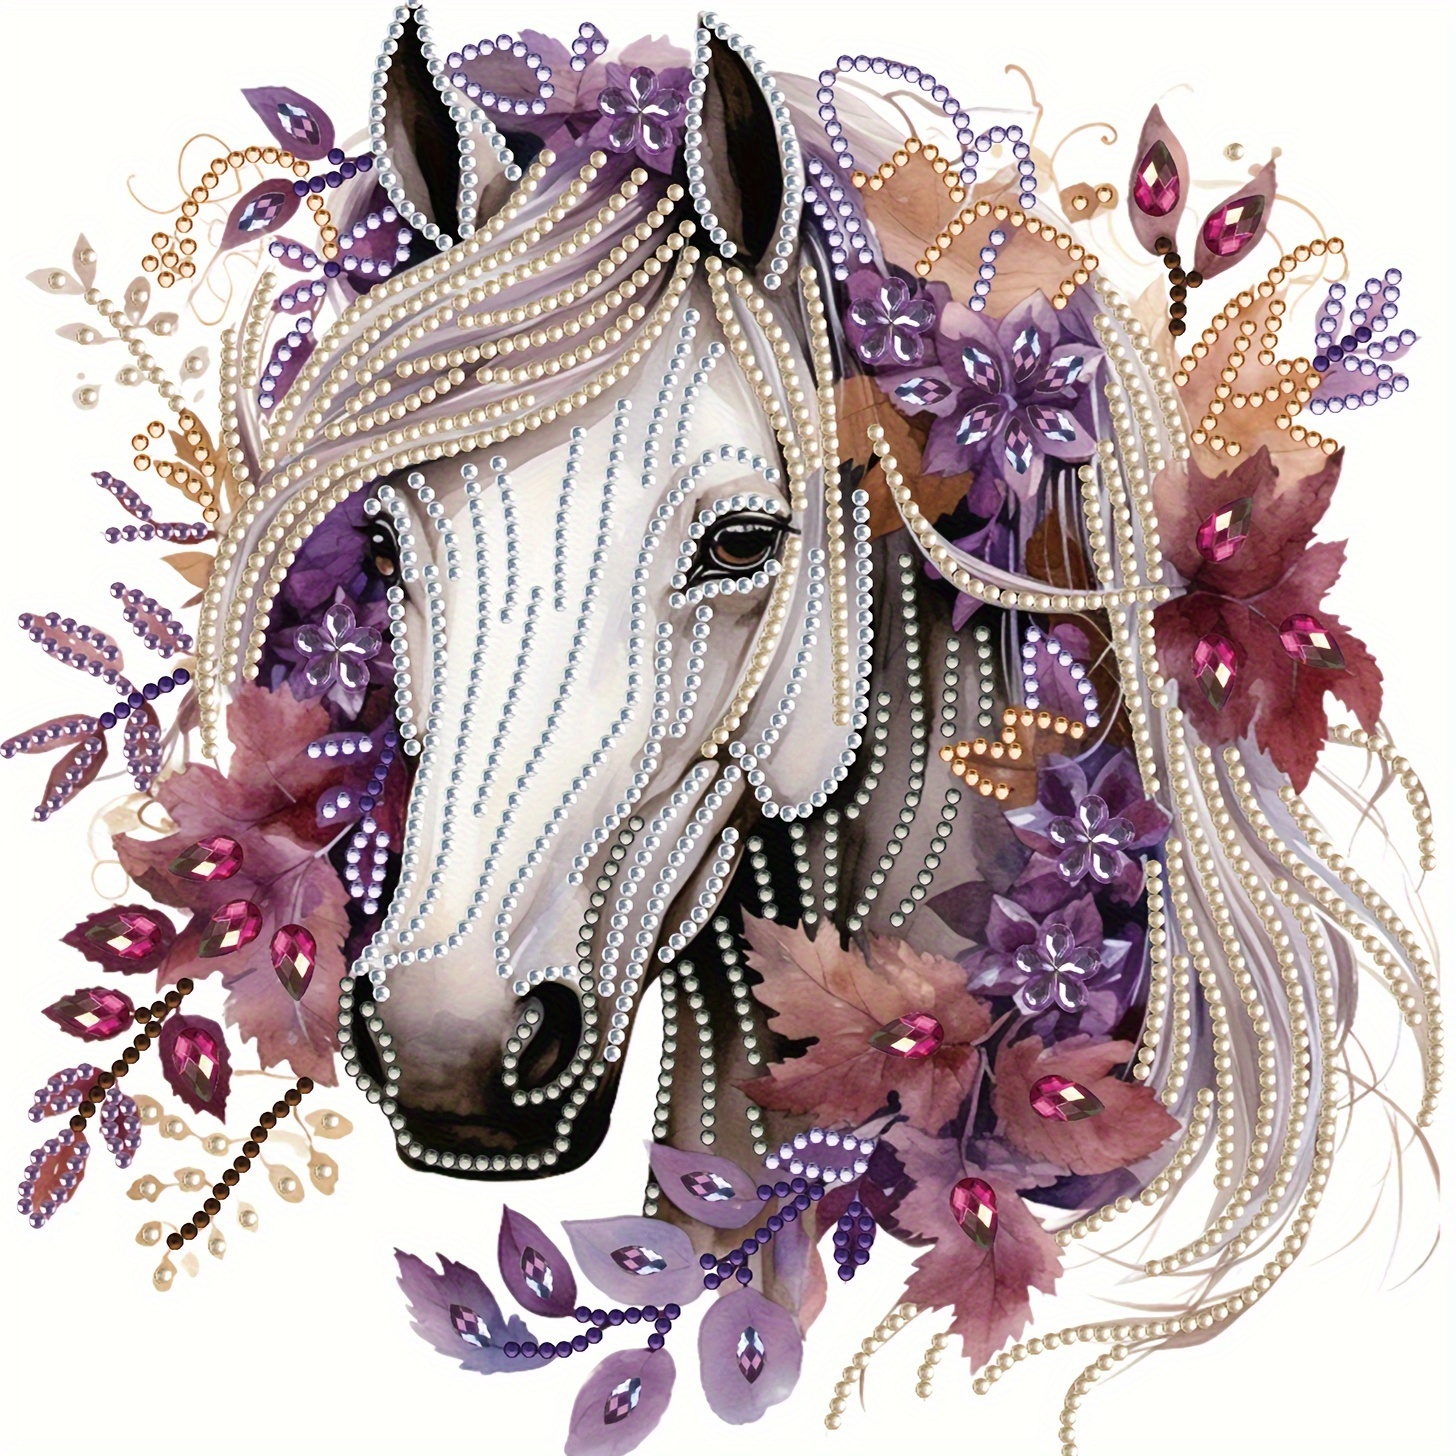 Colorful Horse Diamond Painting Resinstones Embroidery Diamond